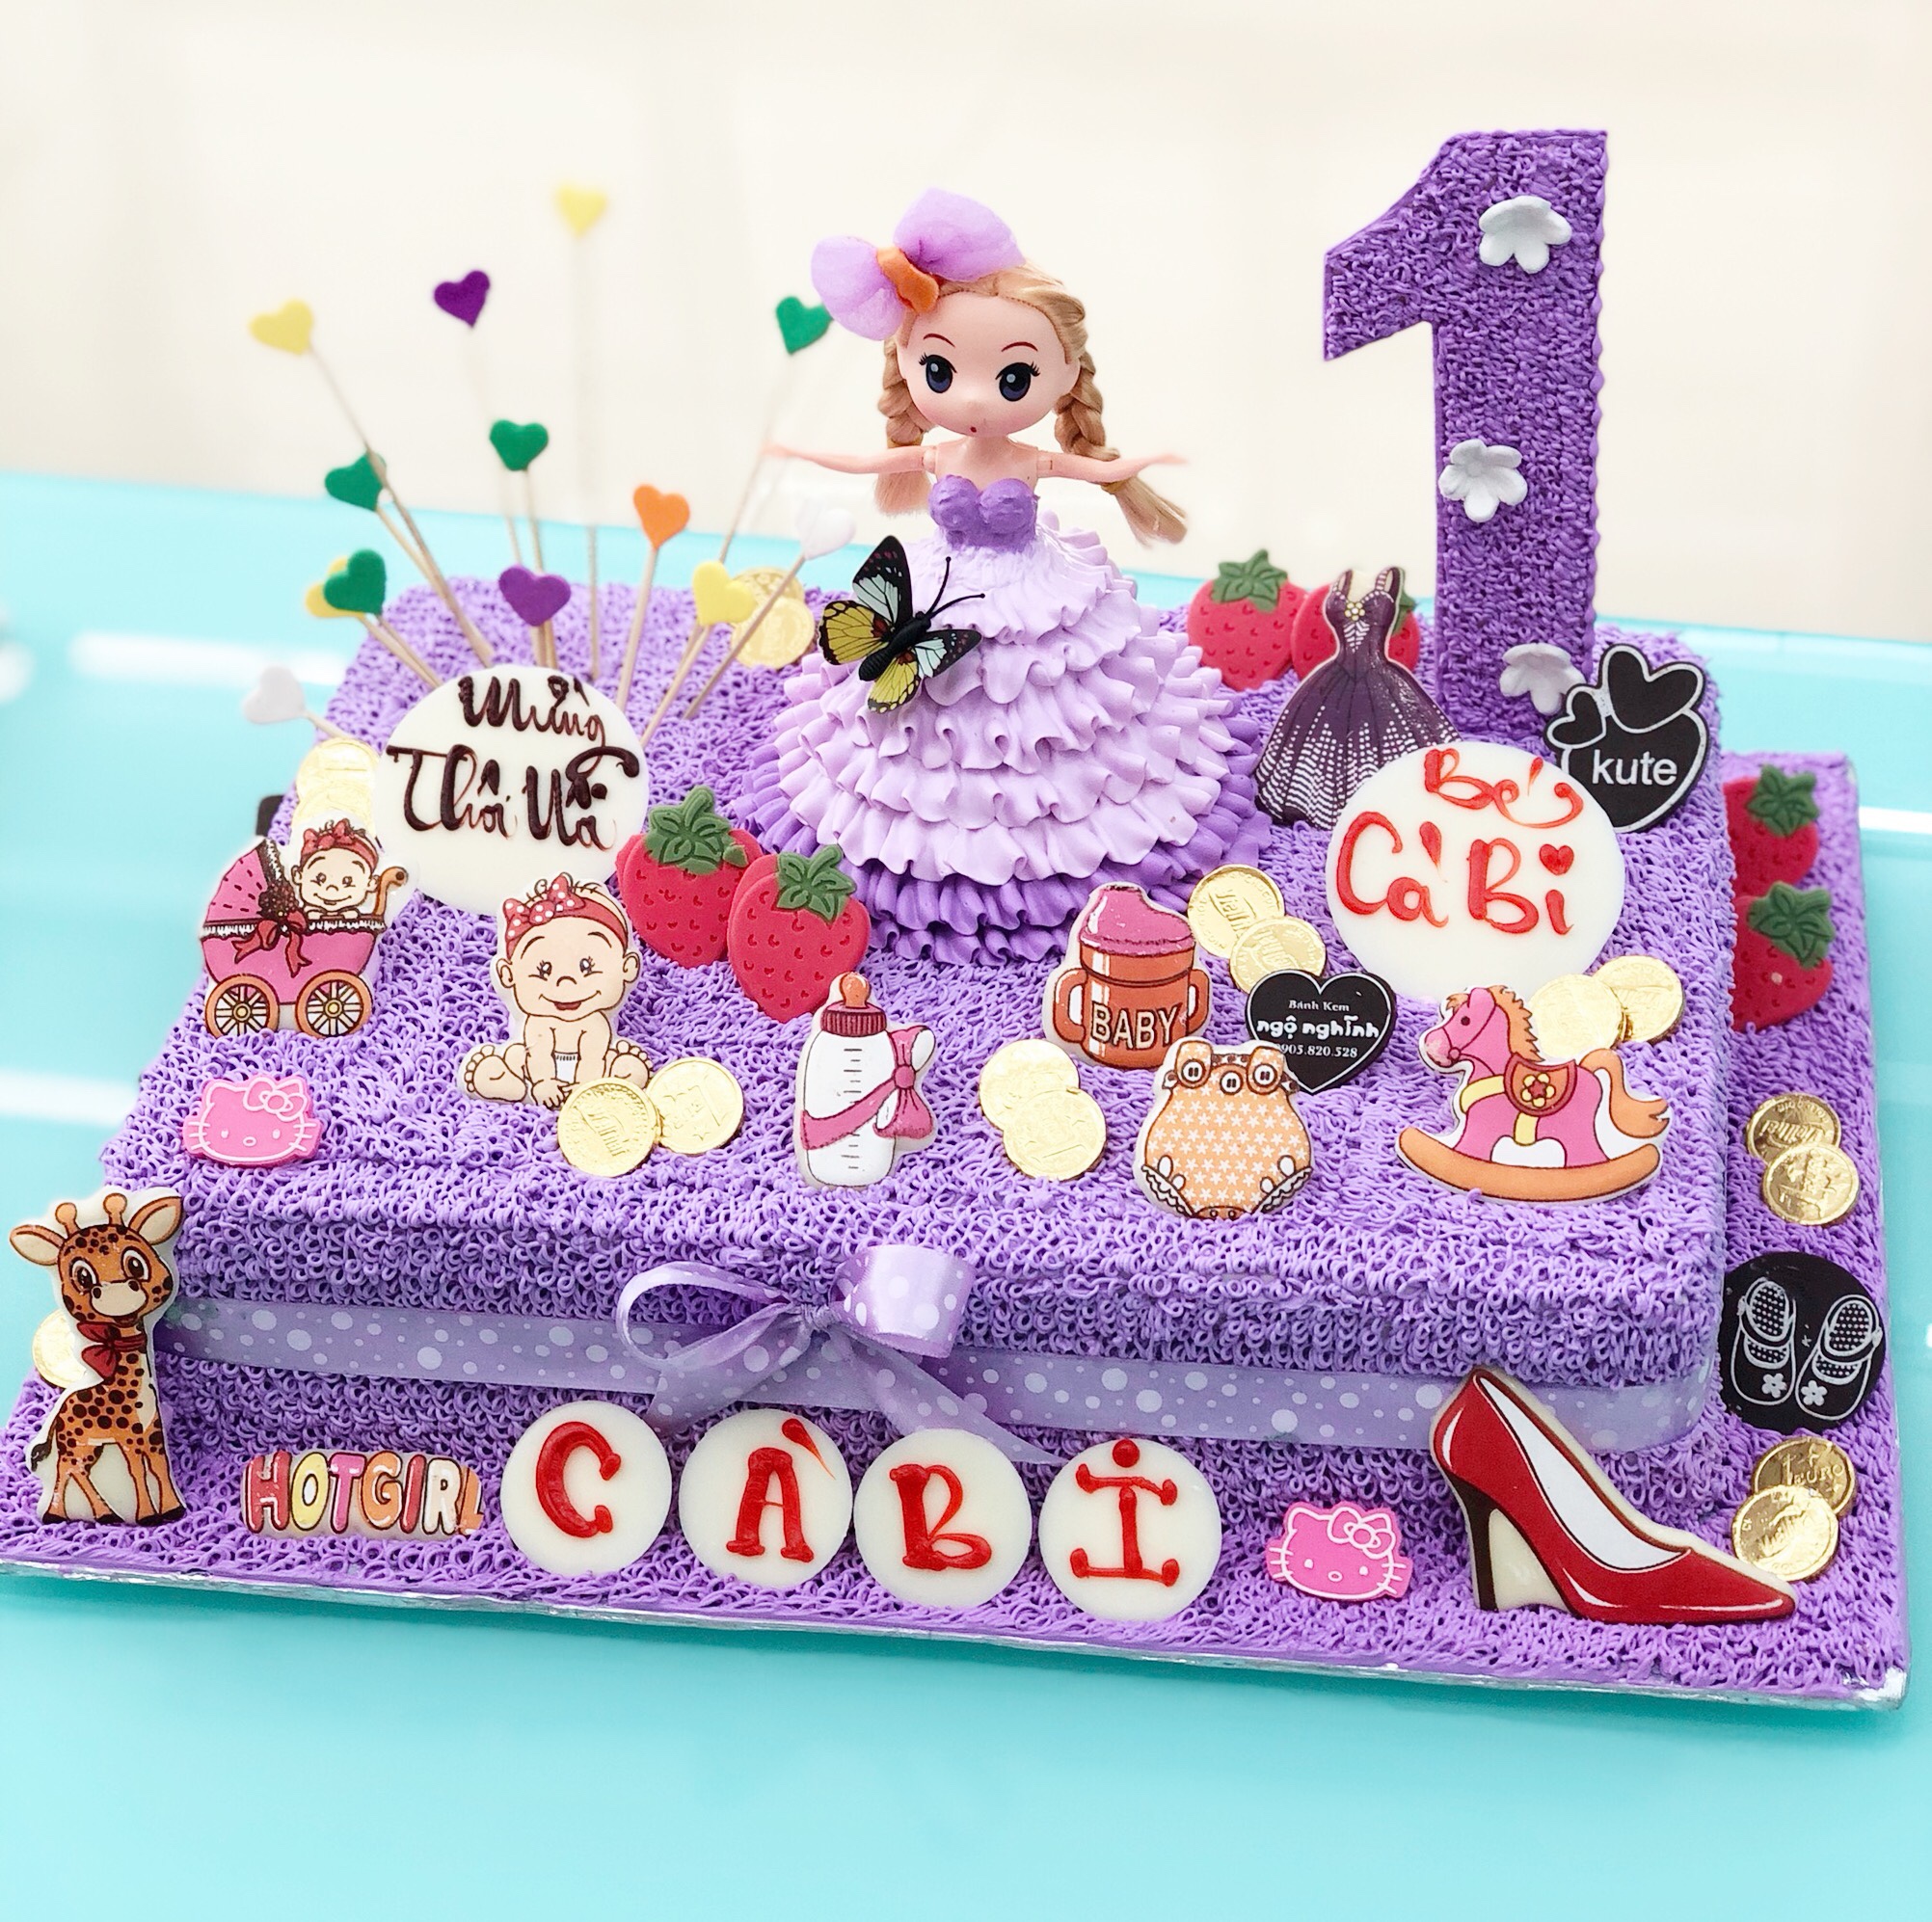 Bánh sinh nhật công chúa chibi với hình ảnh đáng yêu và tuyệt đẹp chính là điểm nhấn của bất kì bữa tiệc sinh nhật nào. Hãy tham khảo những hình ảnh liên quan để chọn cho mình chiếc bánh sinh nhật ấn tượng nhất.